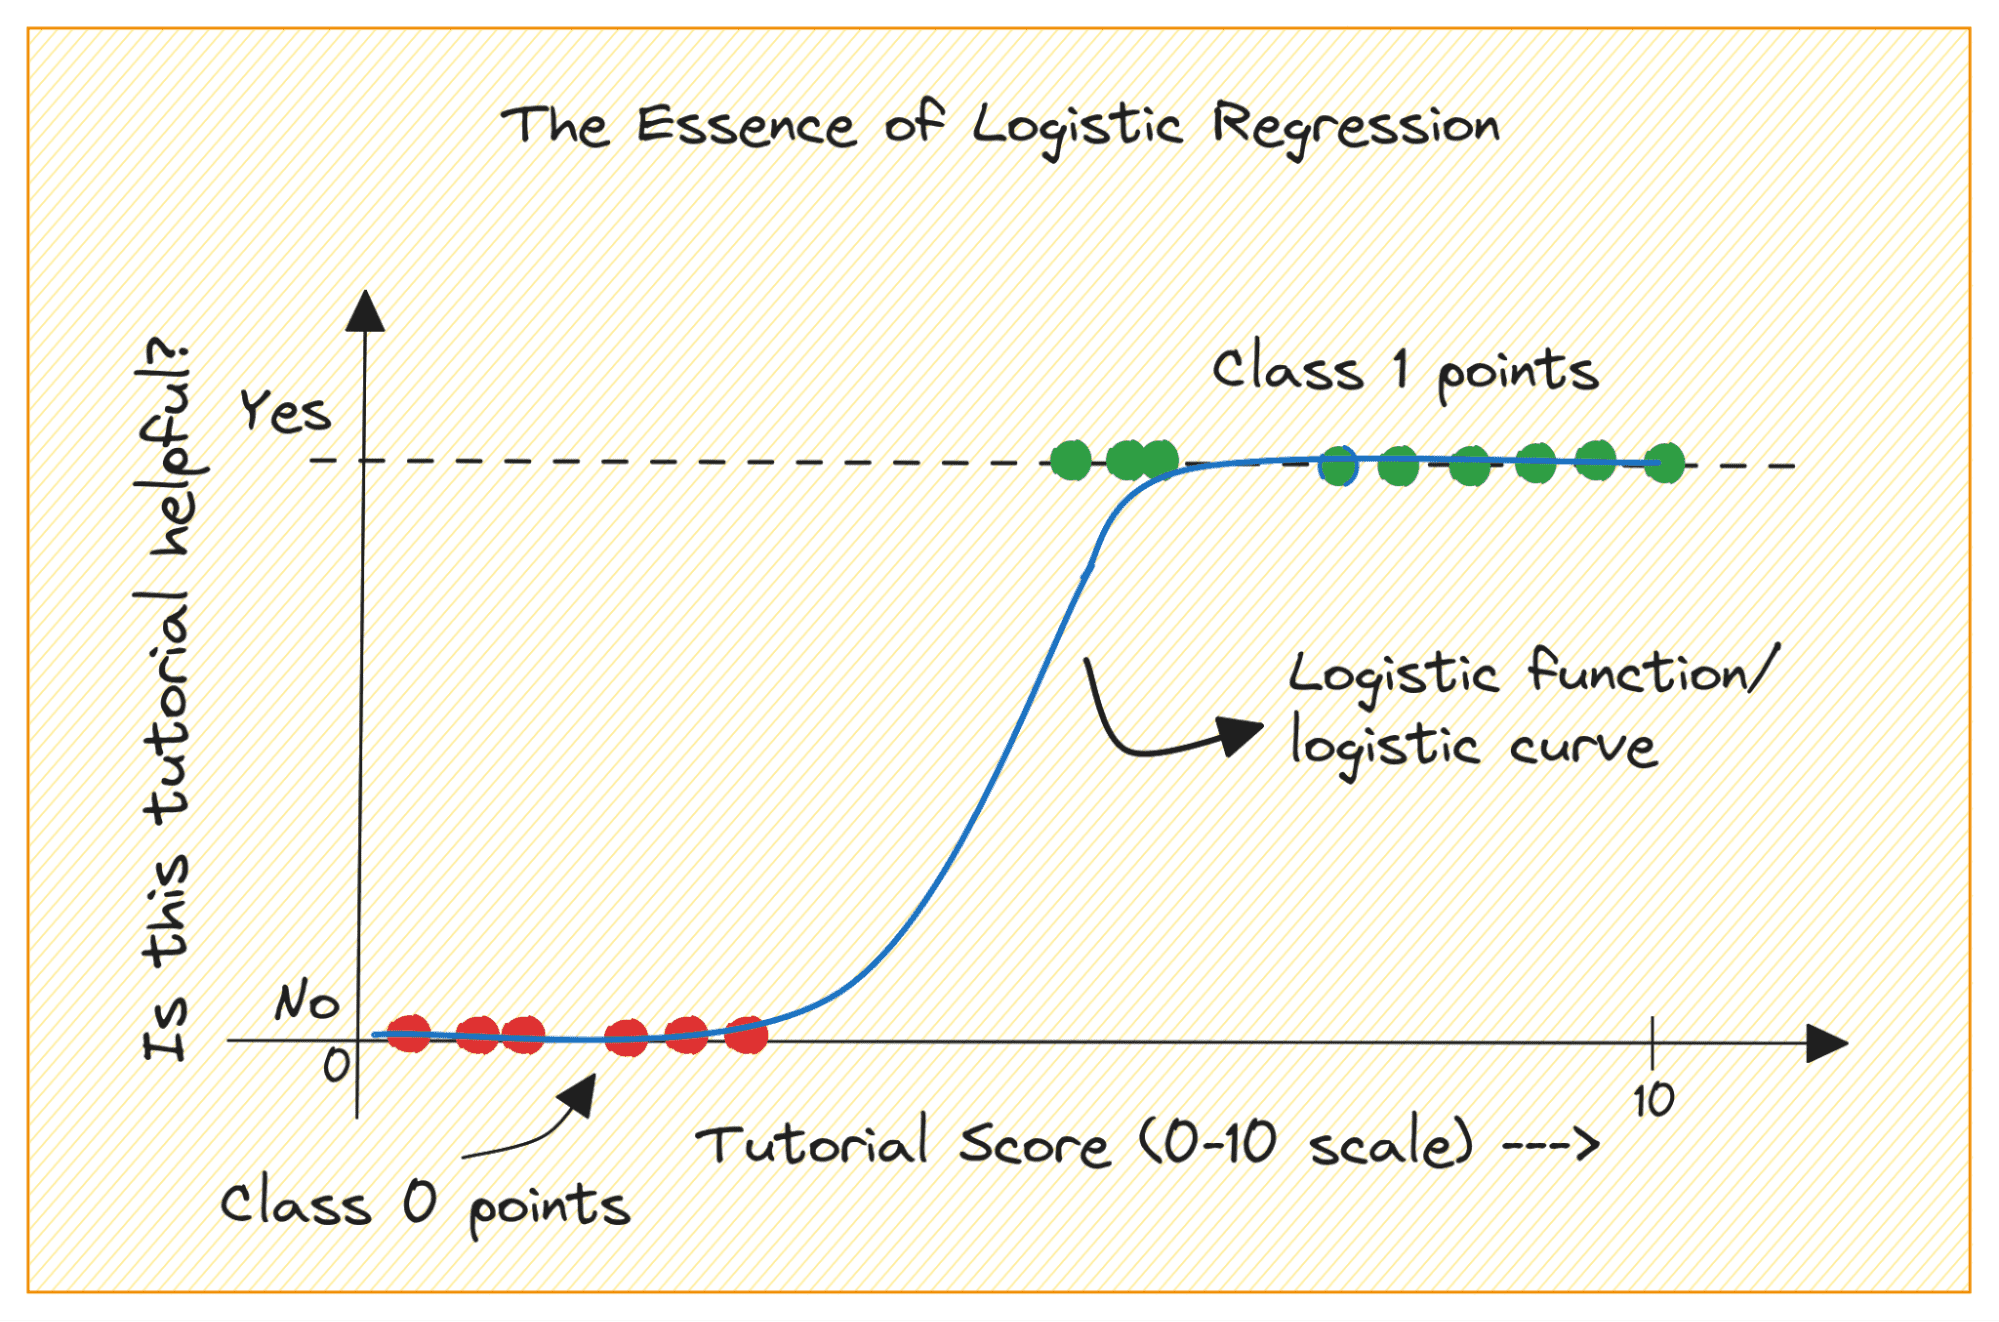 Construyendo modelos predictivos: regresión logística en Python - KDnuggets